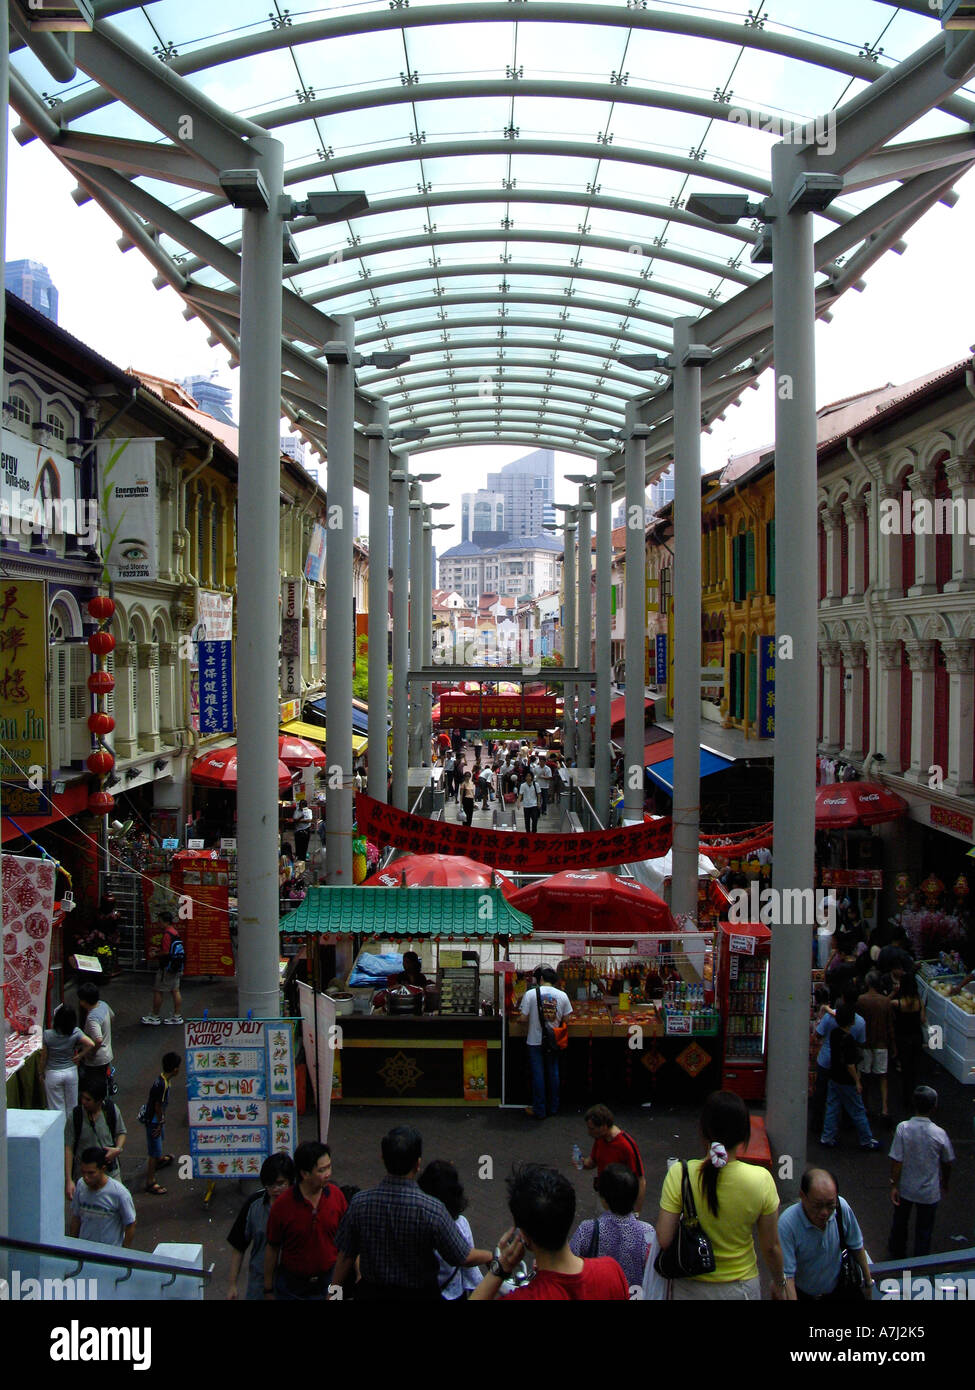 Marketstreet in Chinatown Singapore Stock Photo